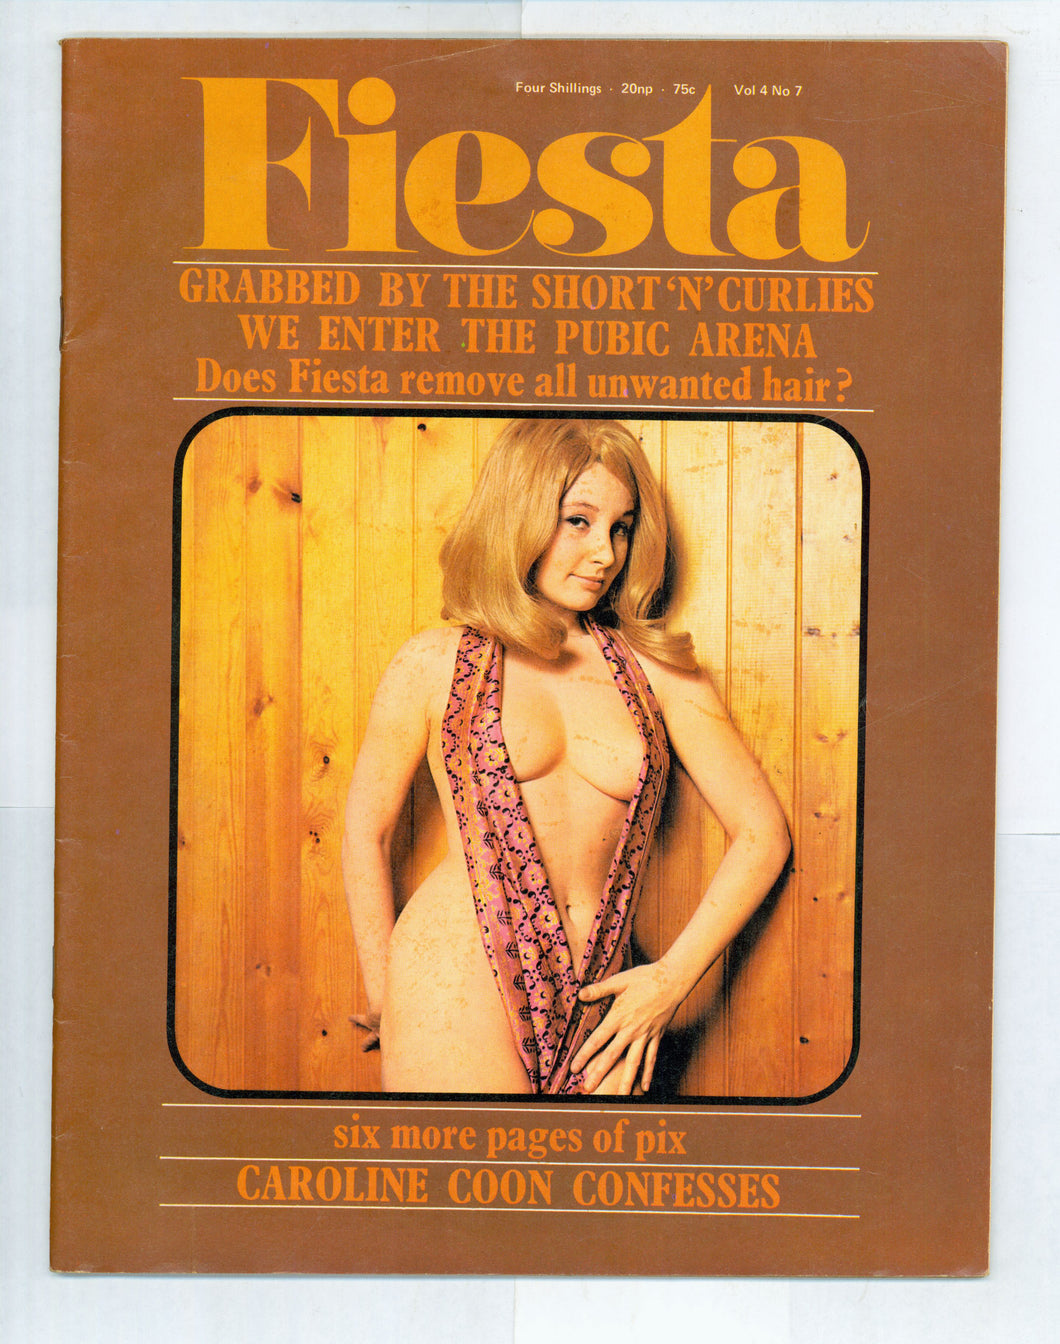 Fiesta Vol 4 No 7 Sept 1970